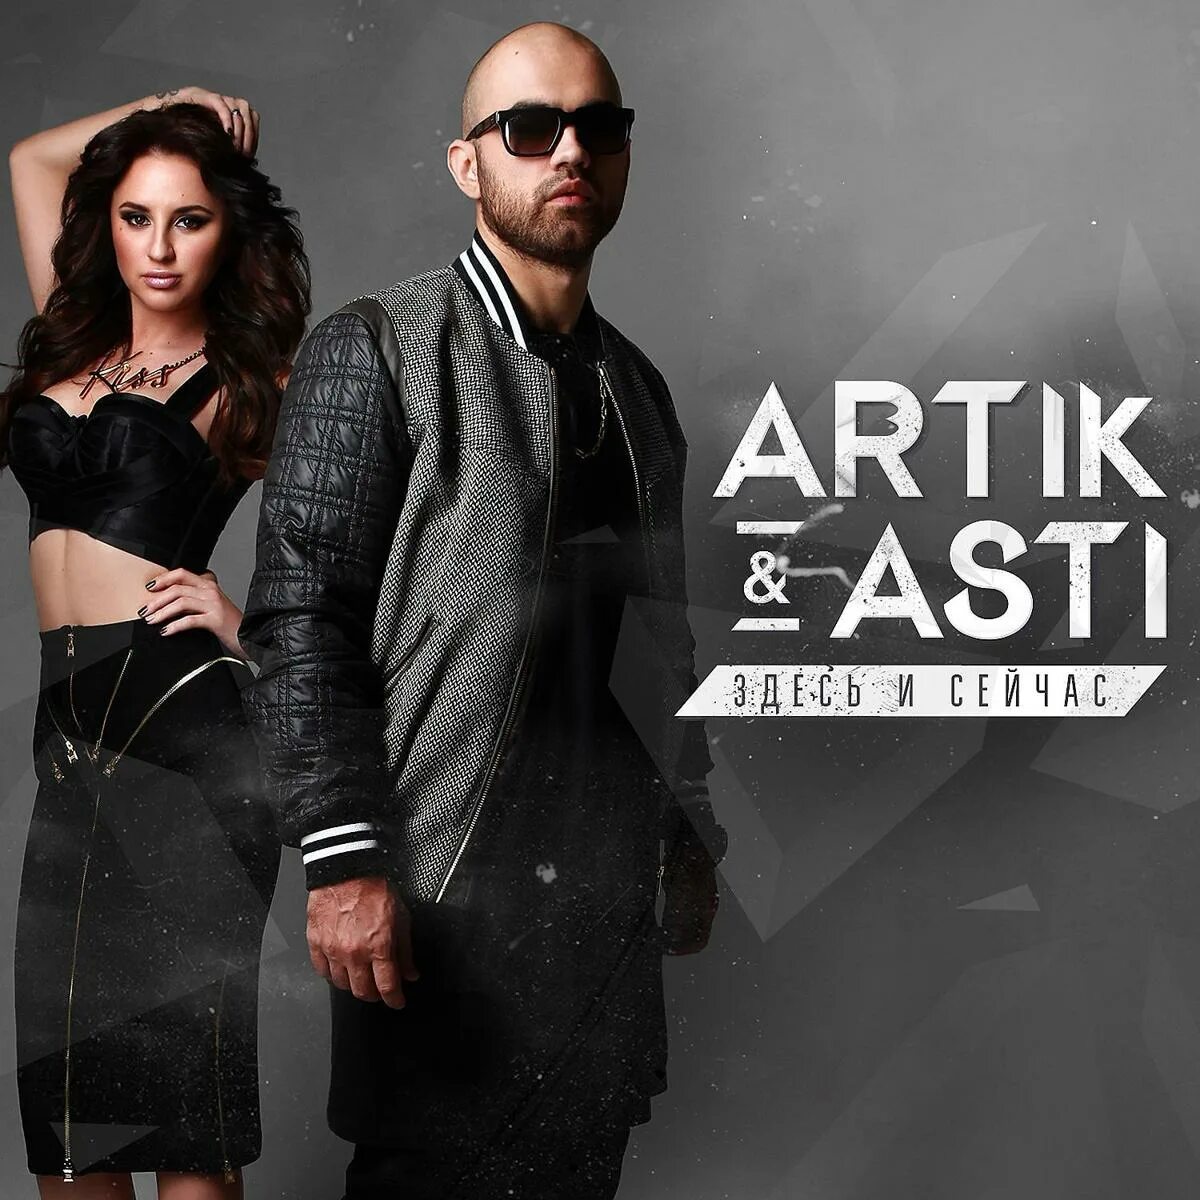 Модерн новая песня. Артик и Асти. Artik Asti здесь и сейчас 2015. Artik Asti обложка. Артик и Асти 2014.